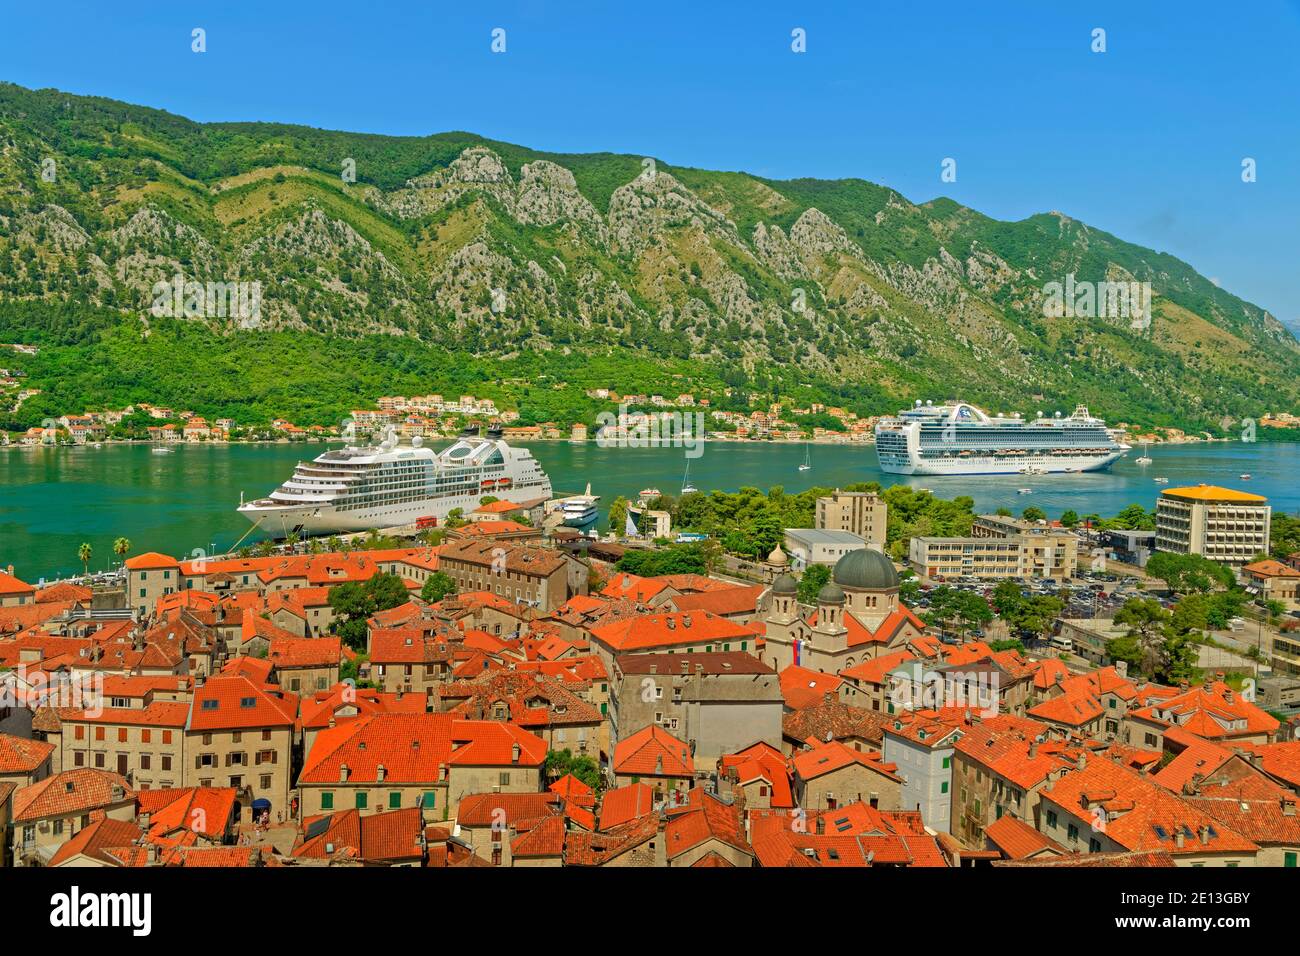 Città vecchia di Cattaro con navi da crociera 'Emerald Princess' e 'Seabourn Odyssey' nella baia di Cattaro, Montenegro. Foto Stock